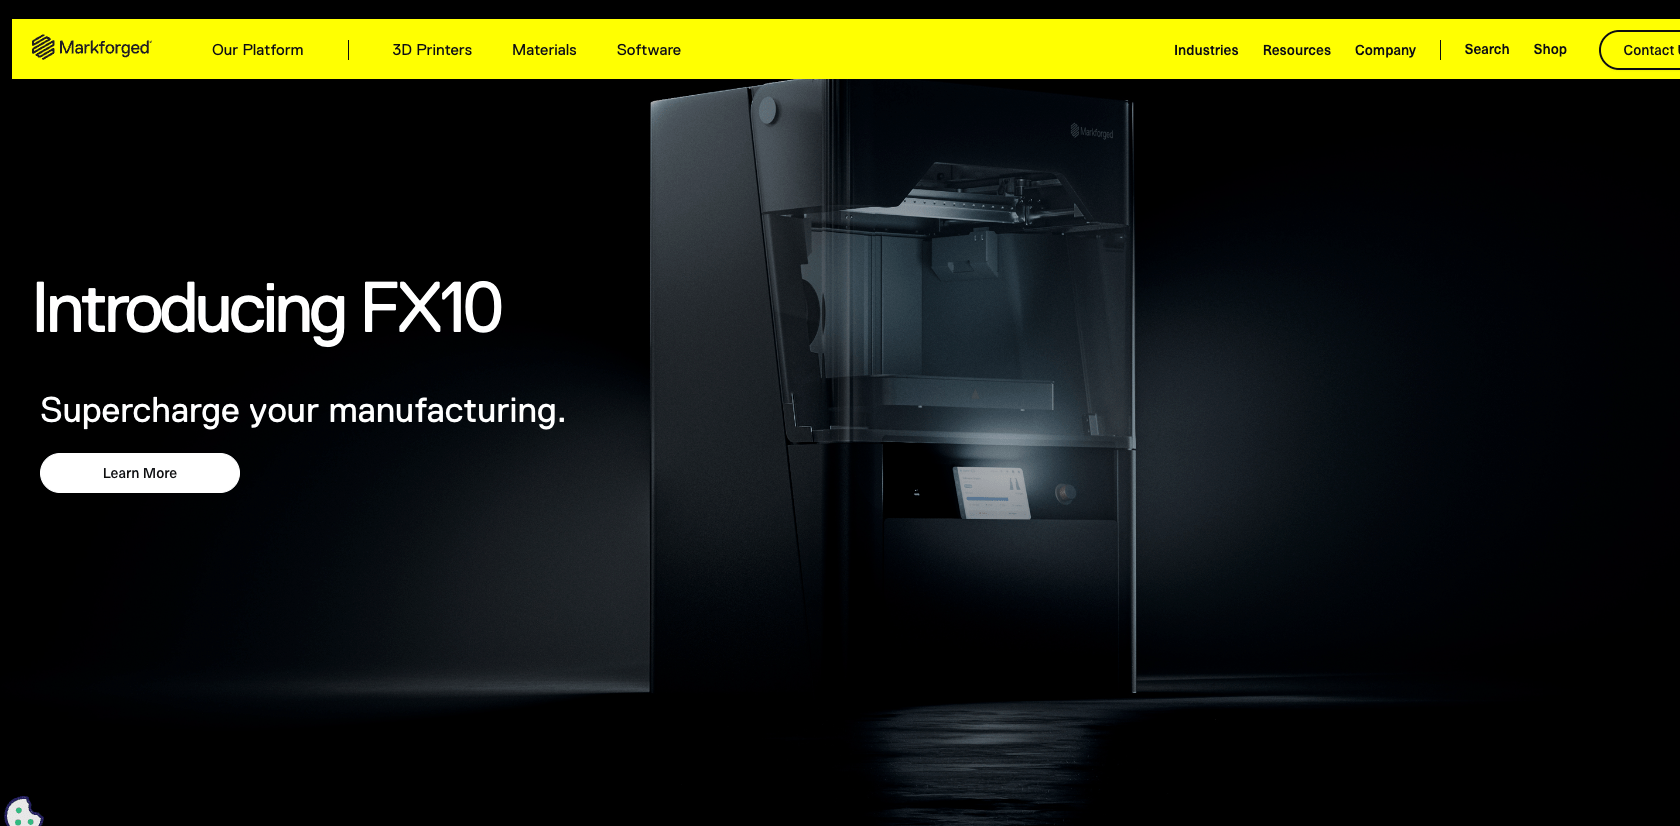 markforged website features an ultra-sleek, dark-themed design